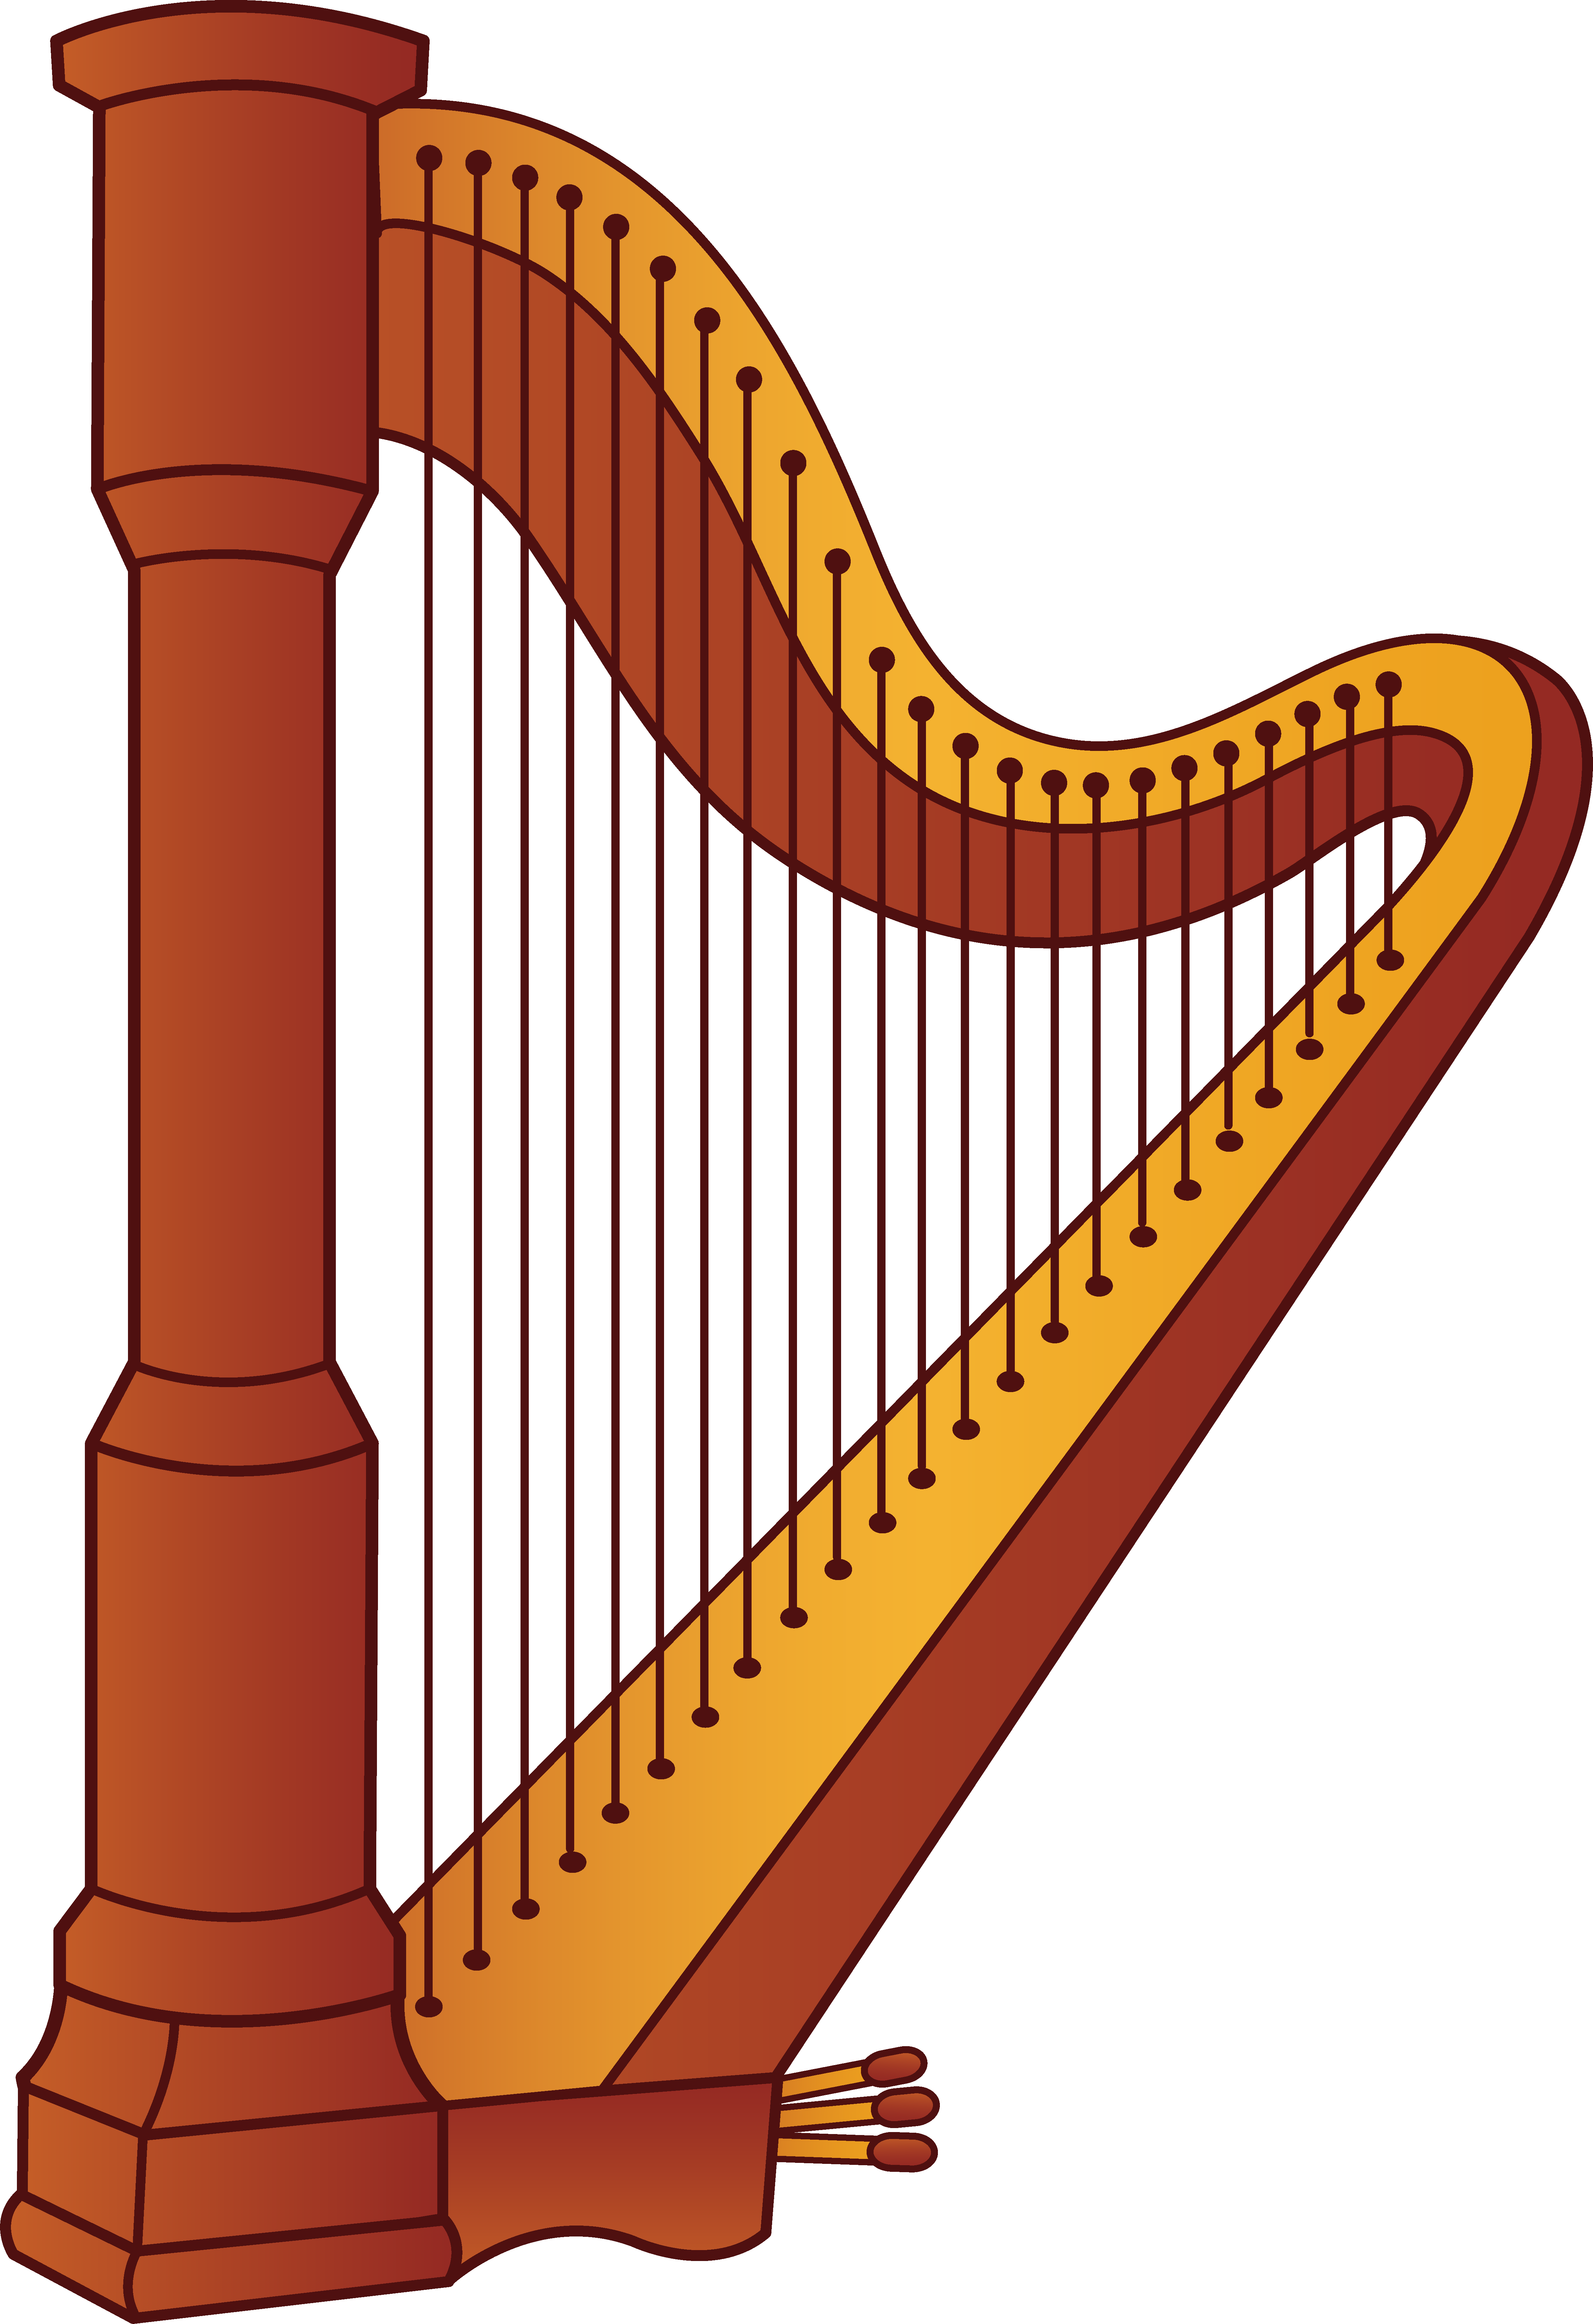 Musician clipart preschool music. Harp musical instrument pinterest